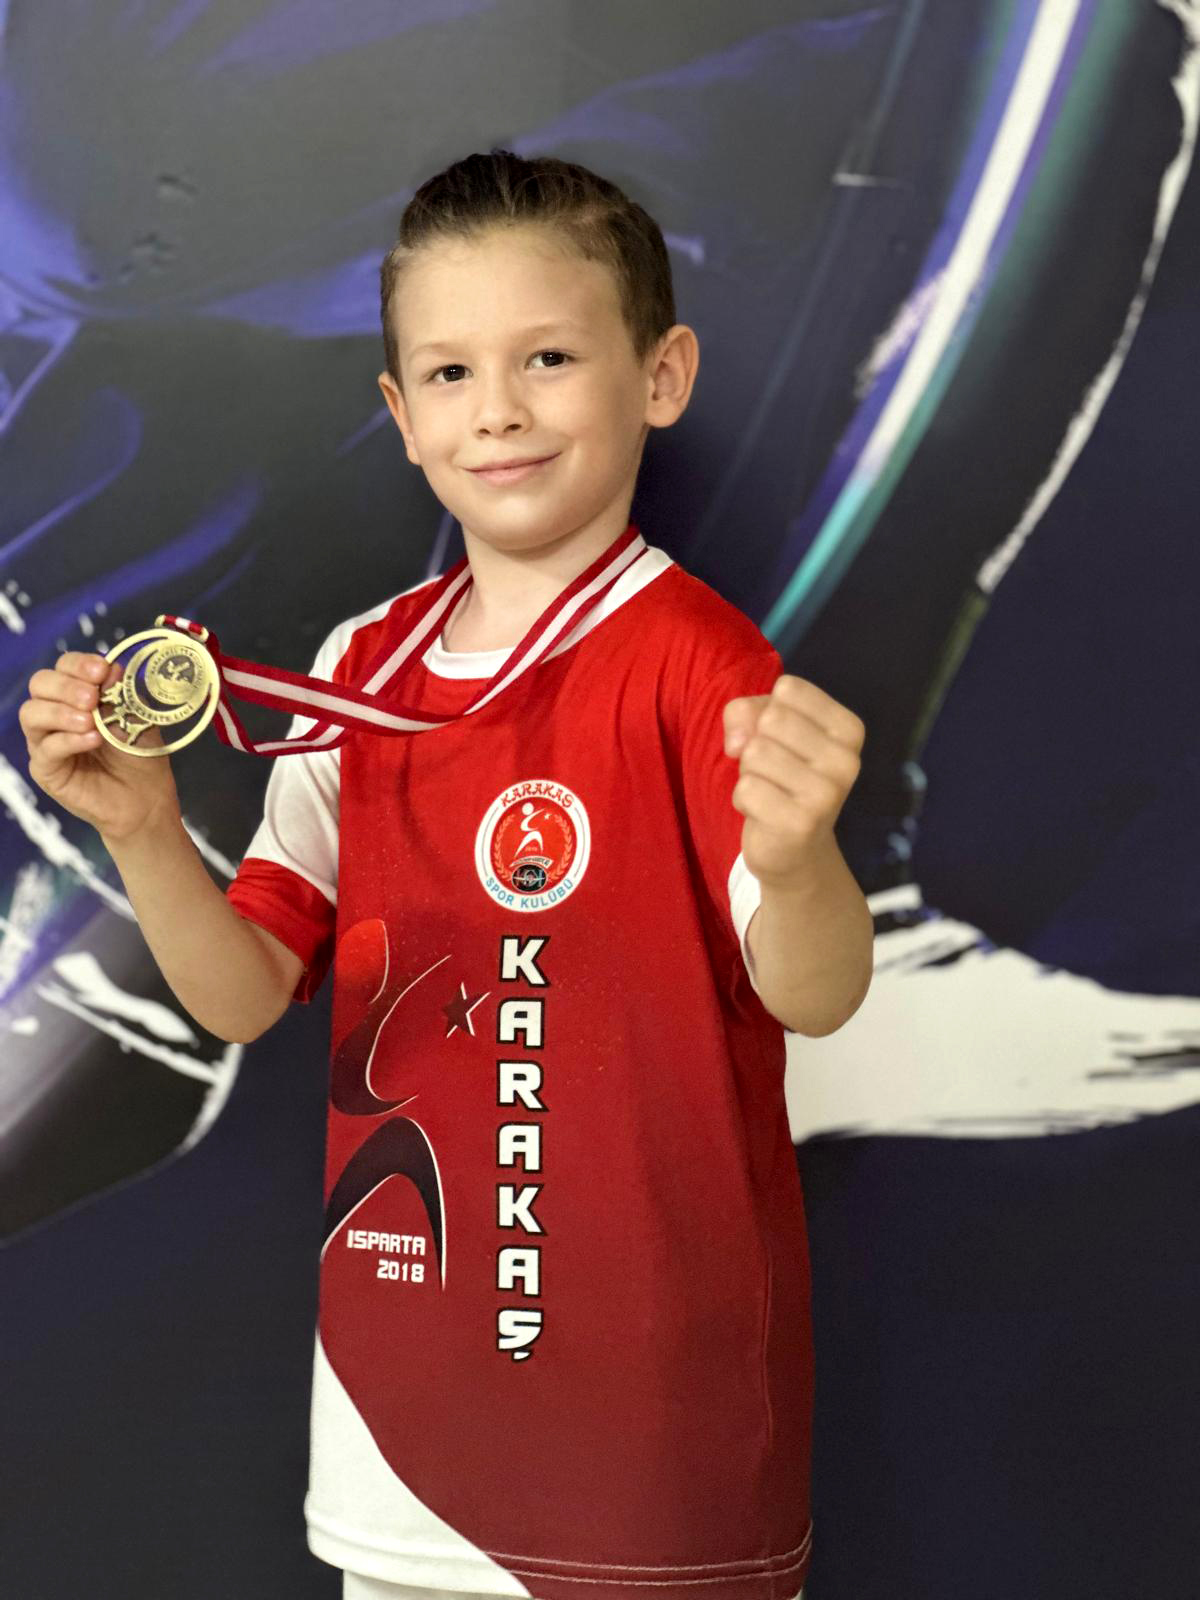 Türkiye üçüncüsü 8 yaşındaki karateci Enes, beyin tümö